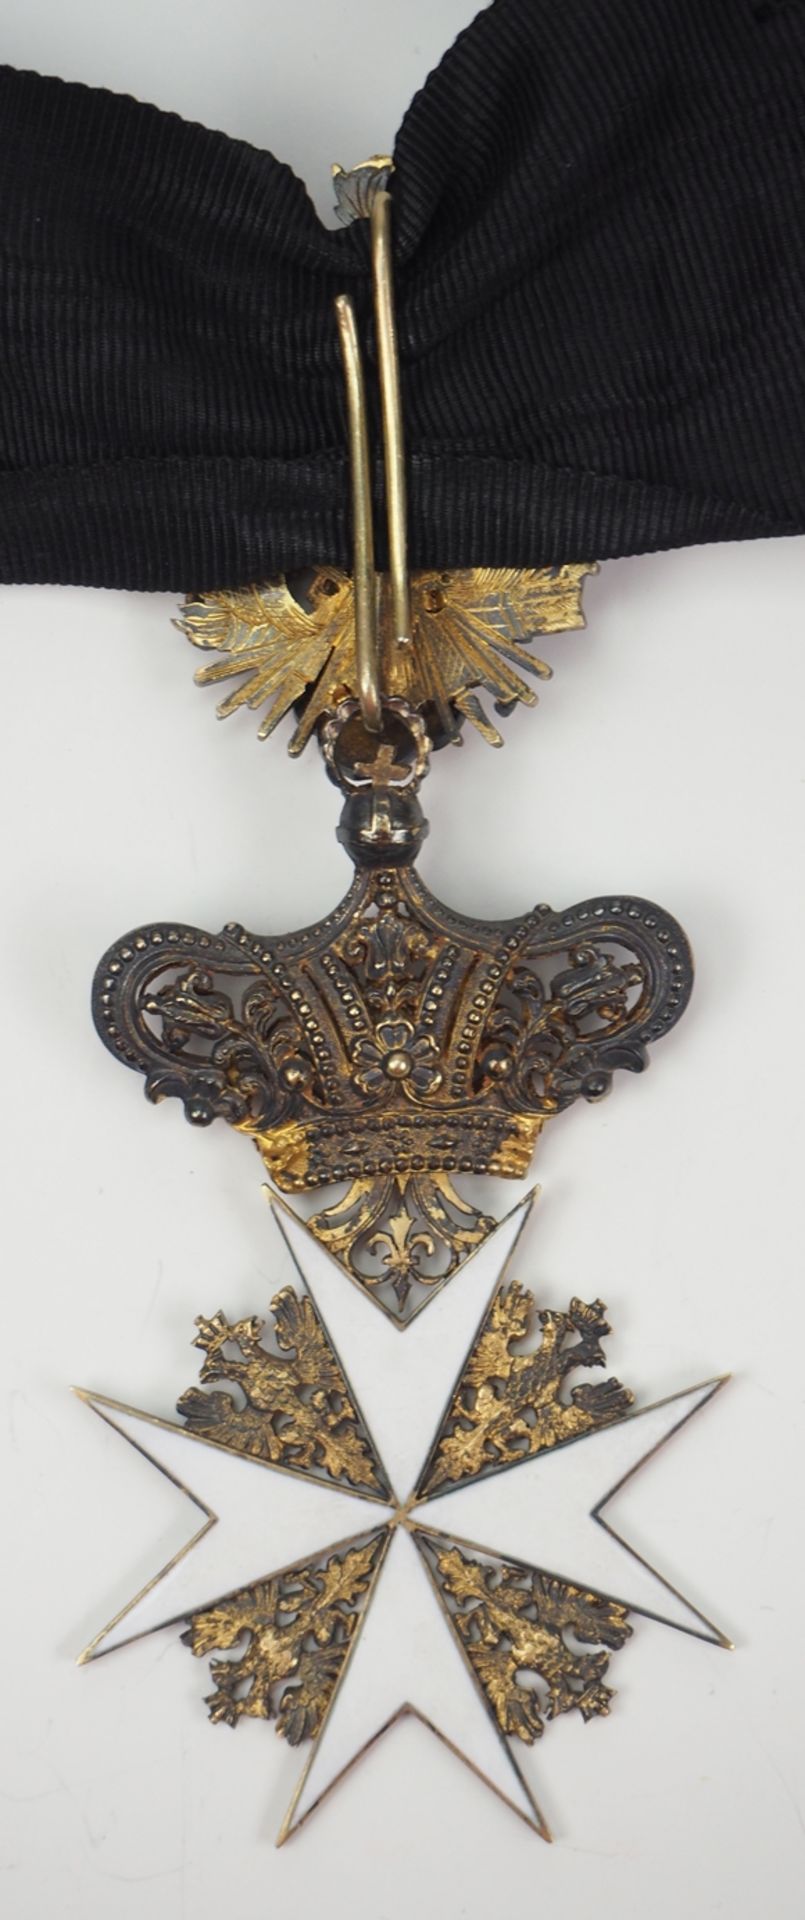 Österreich: Malteser Ritterorden, Ritterordens Protektorat Österreich - Böhmen, Halskreuz der Komtu - Image 3 of 3